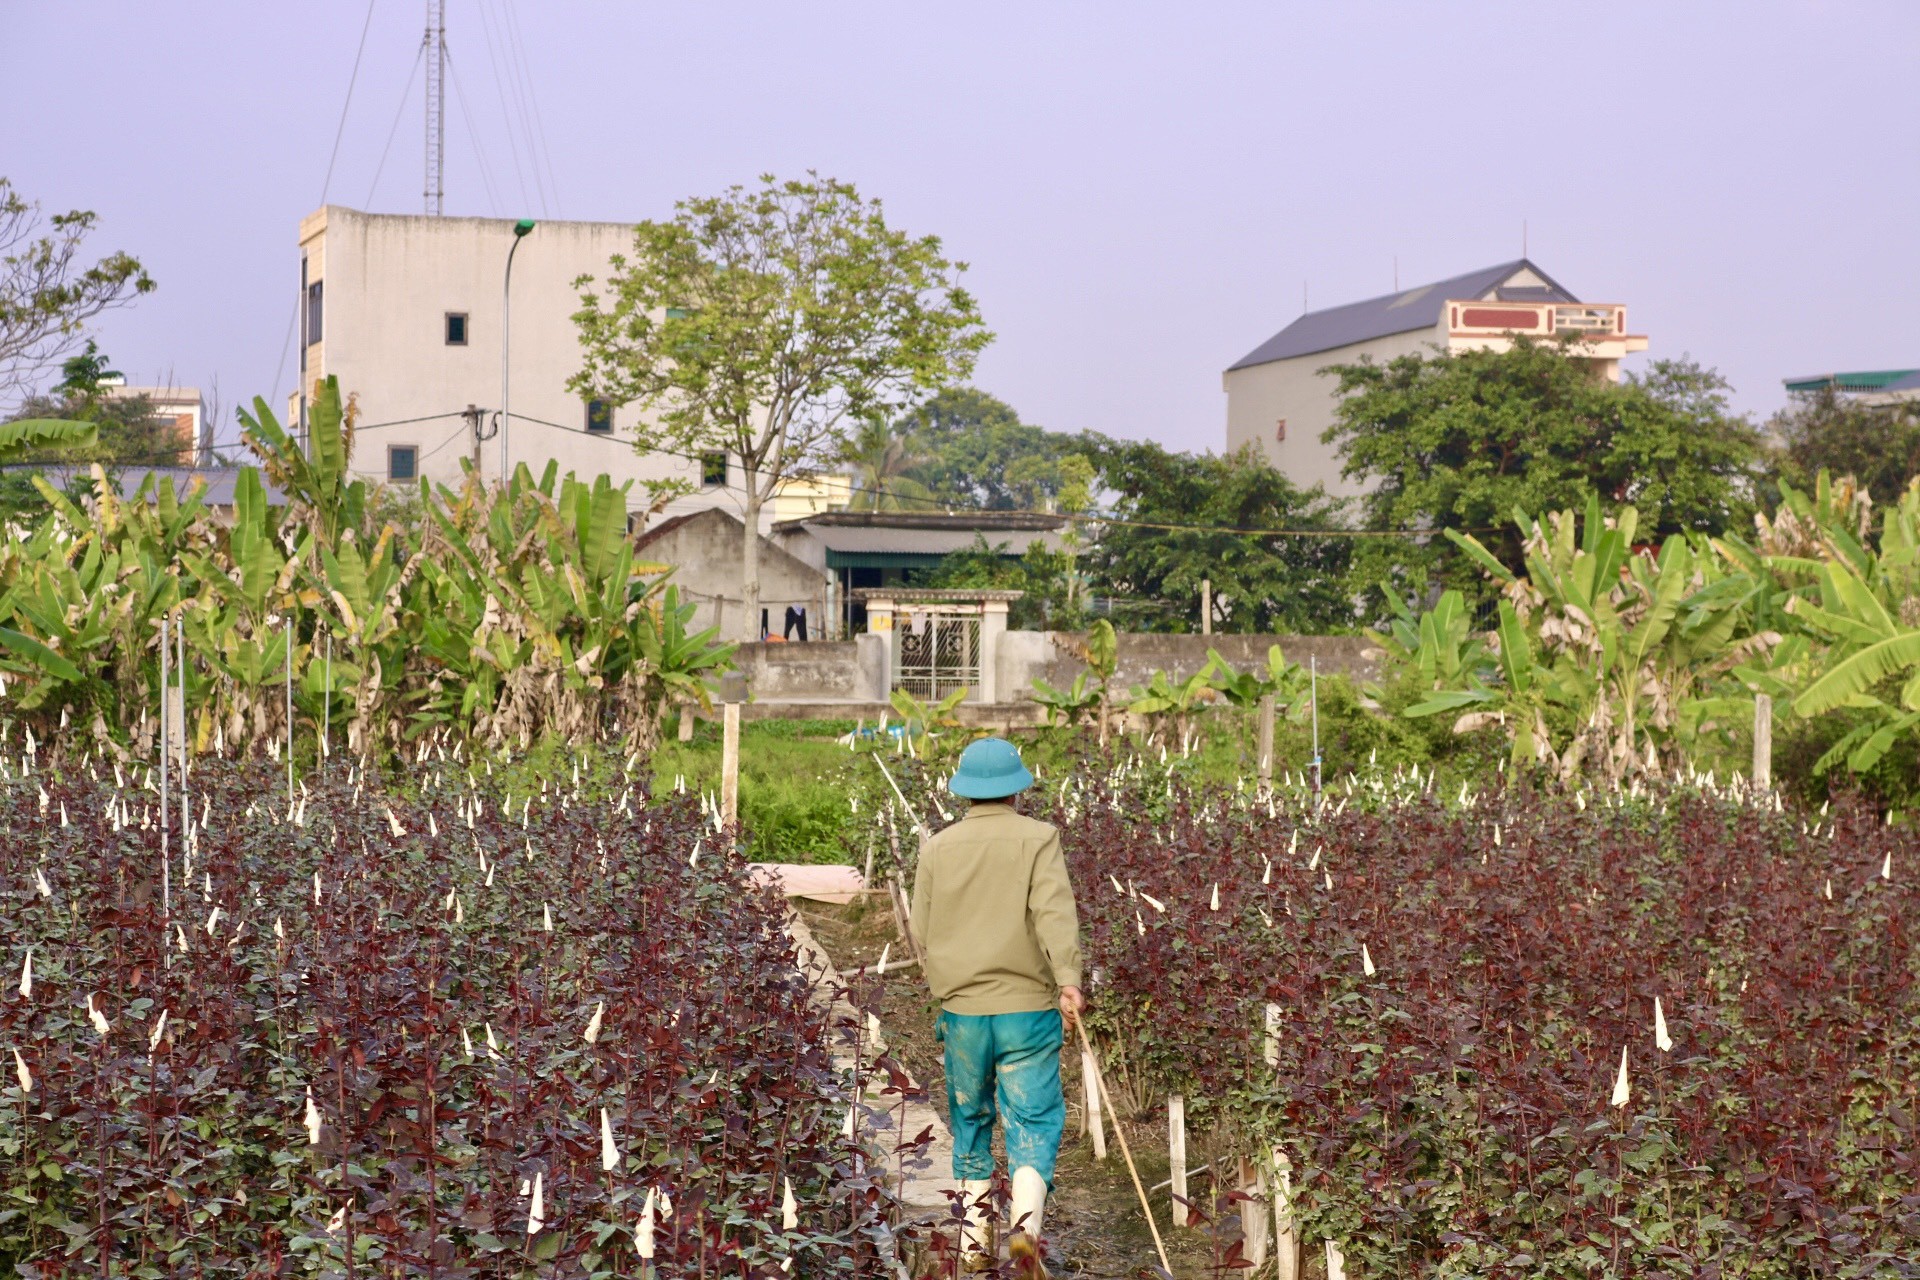 Thủ phủ hoa lớn nhất xứ Thanh: Người làm vườn trông chờ vụ Tết để 'gỡ vốn' - Ảnh 11.